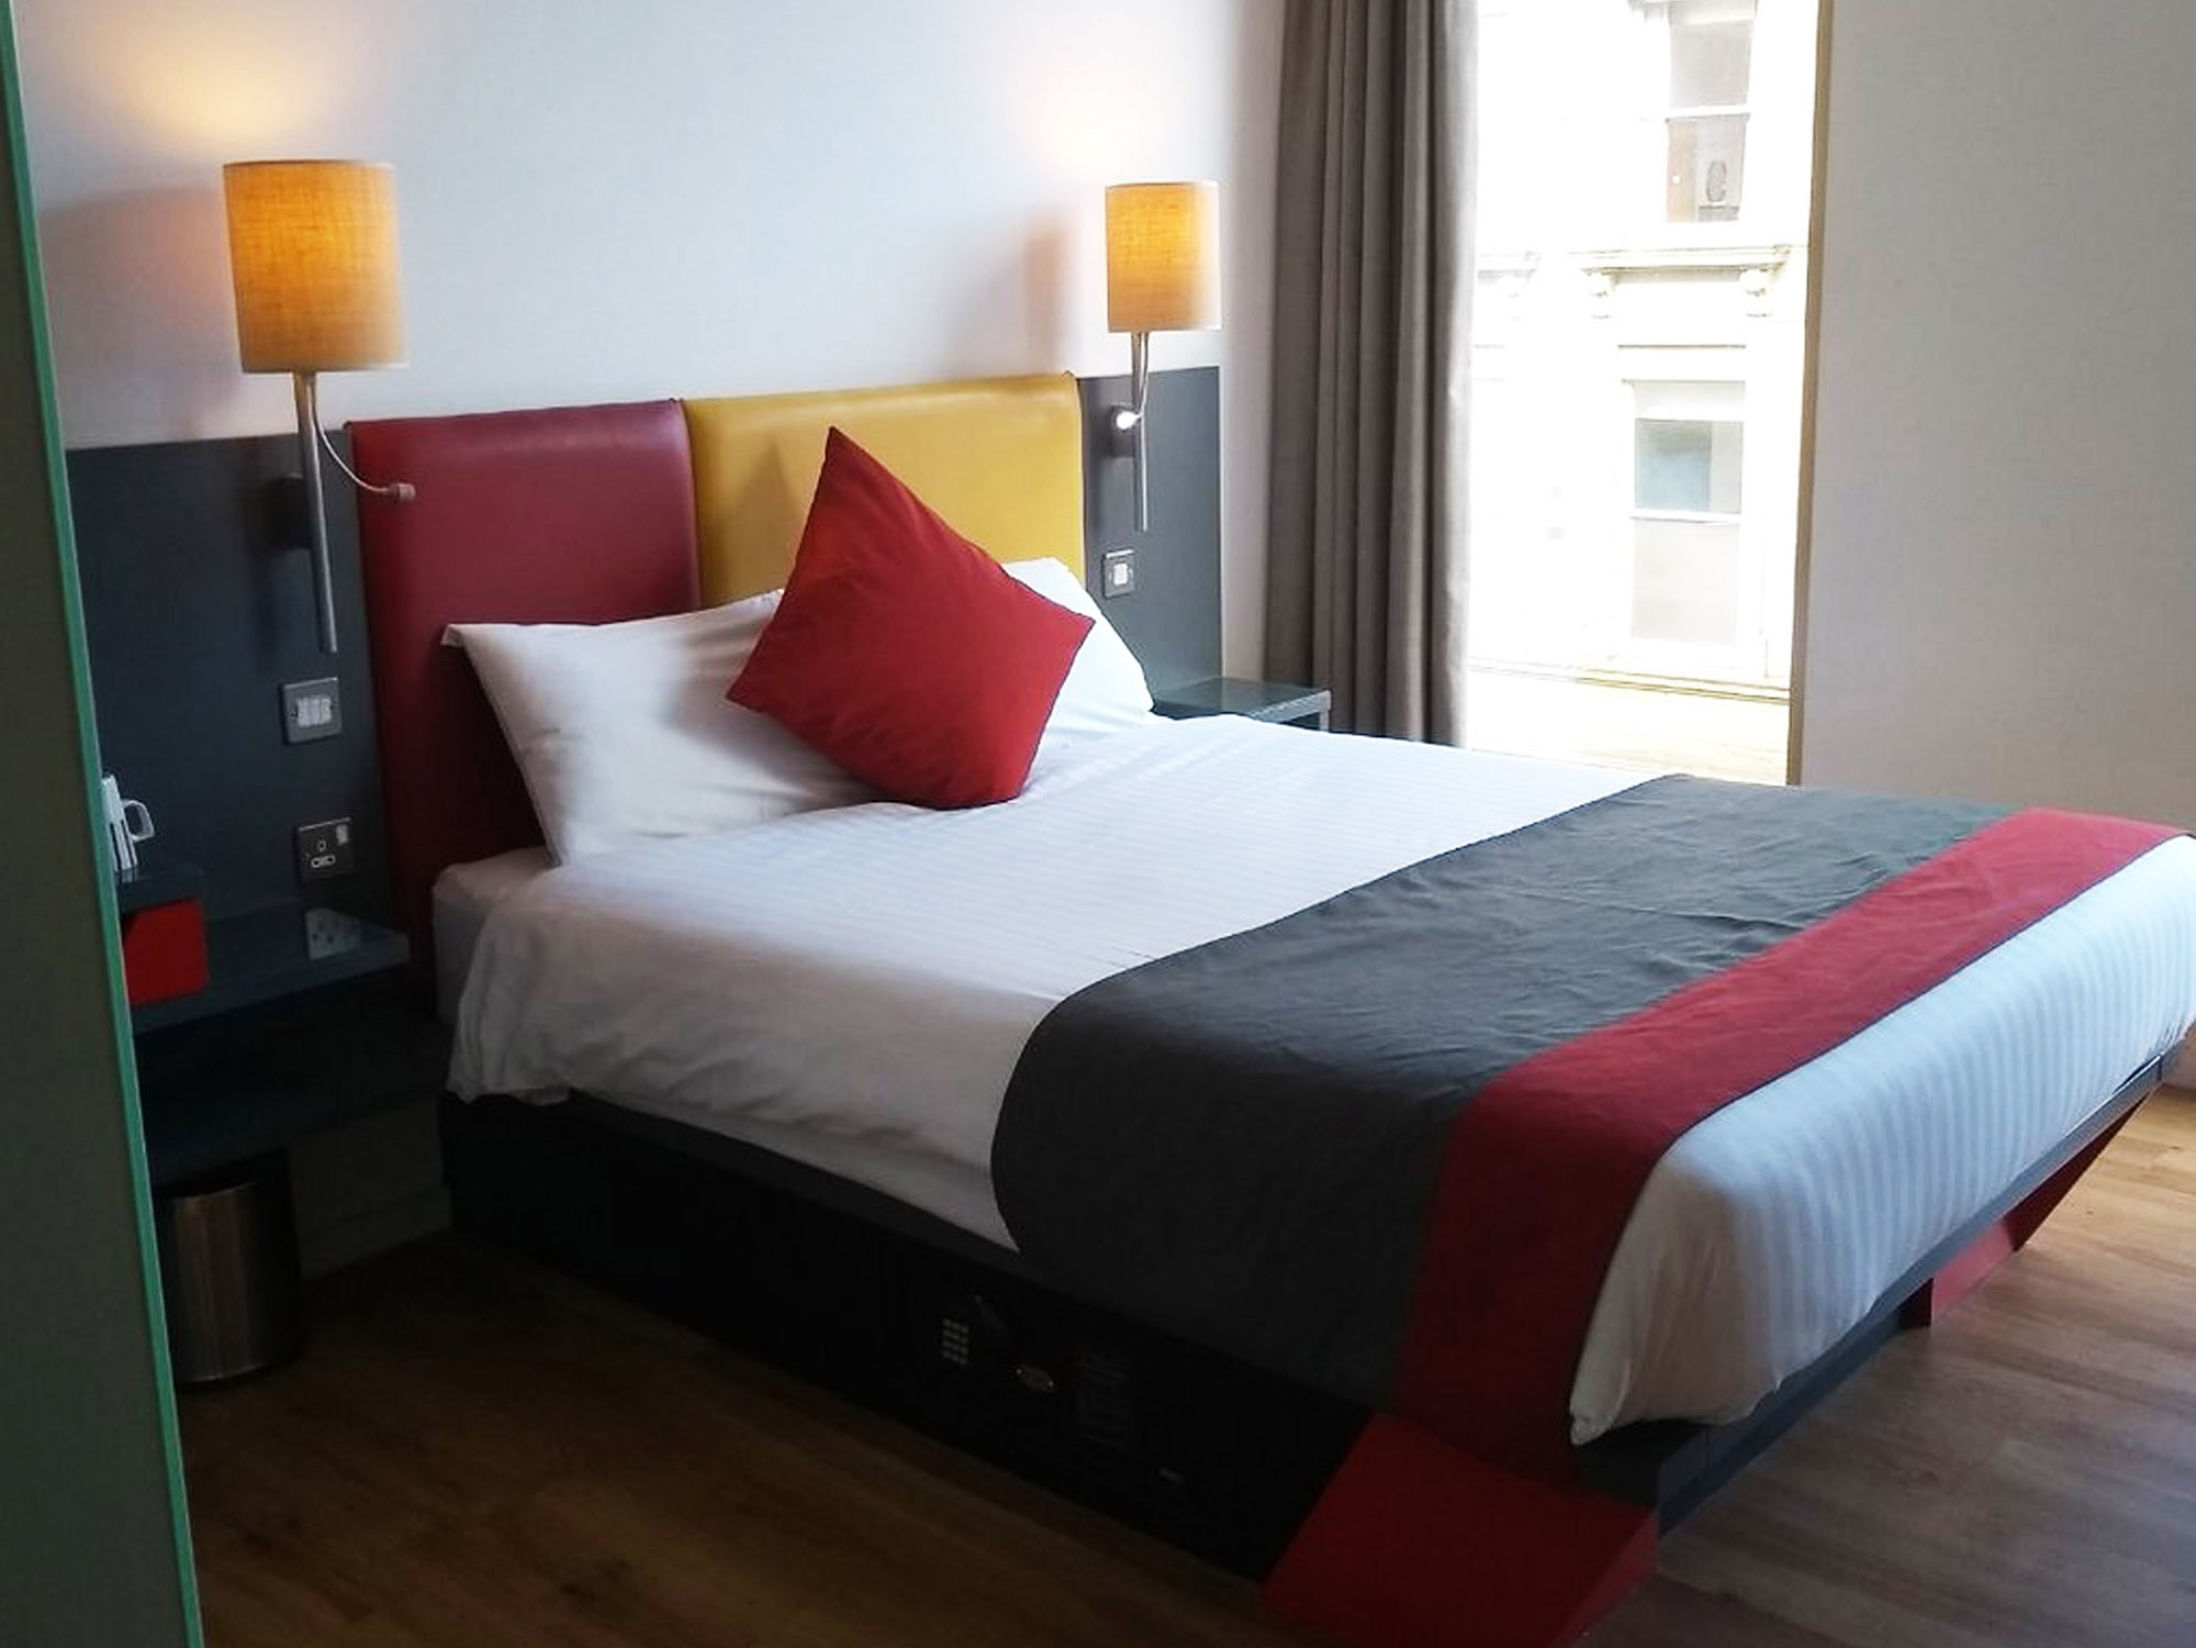 Best Hotels in Newcastle - Sleeperz